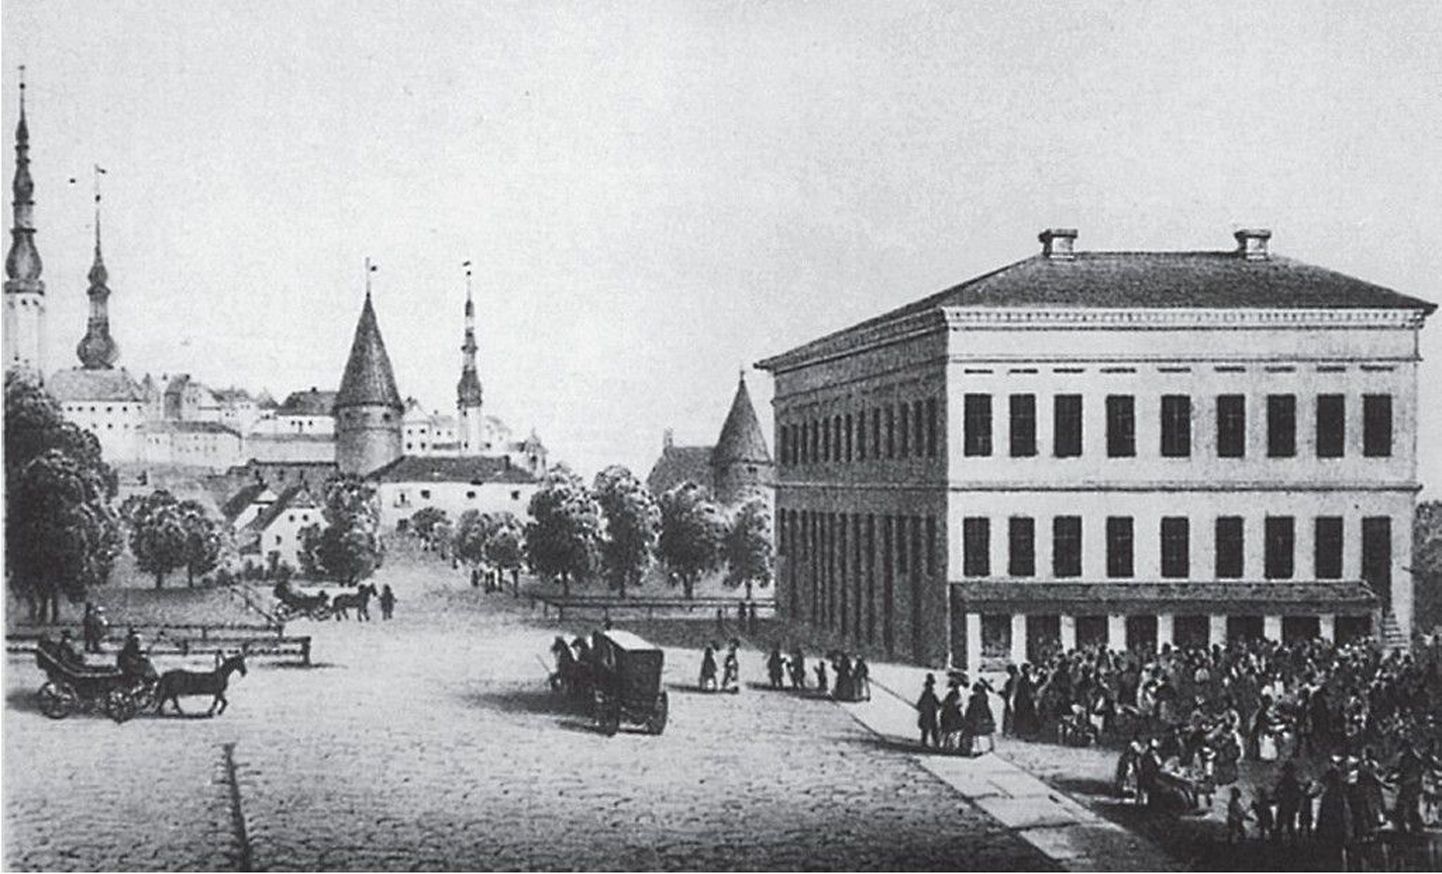 Vene turg, nüüdne Viru väljak, 19. sajandi teisel poolel. Paremal paistab Rotermanni kaubamaja.